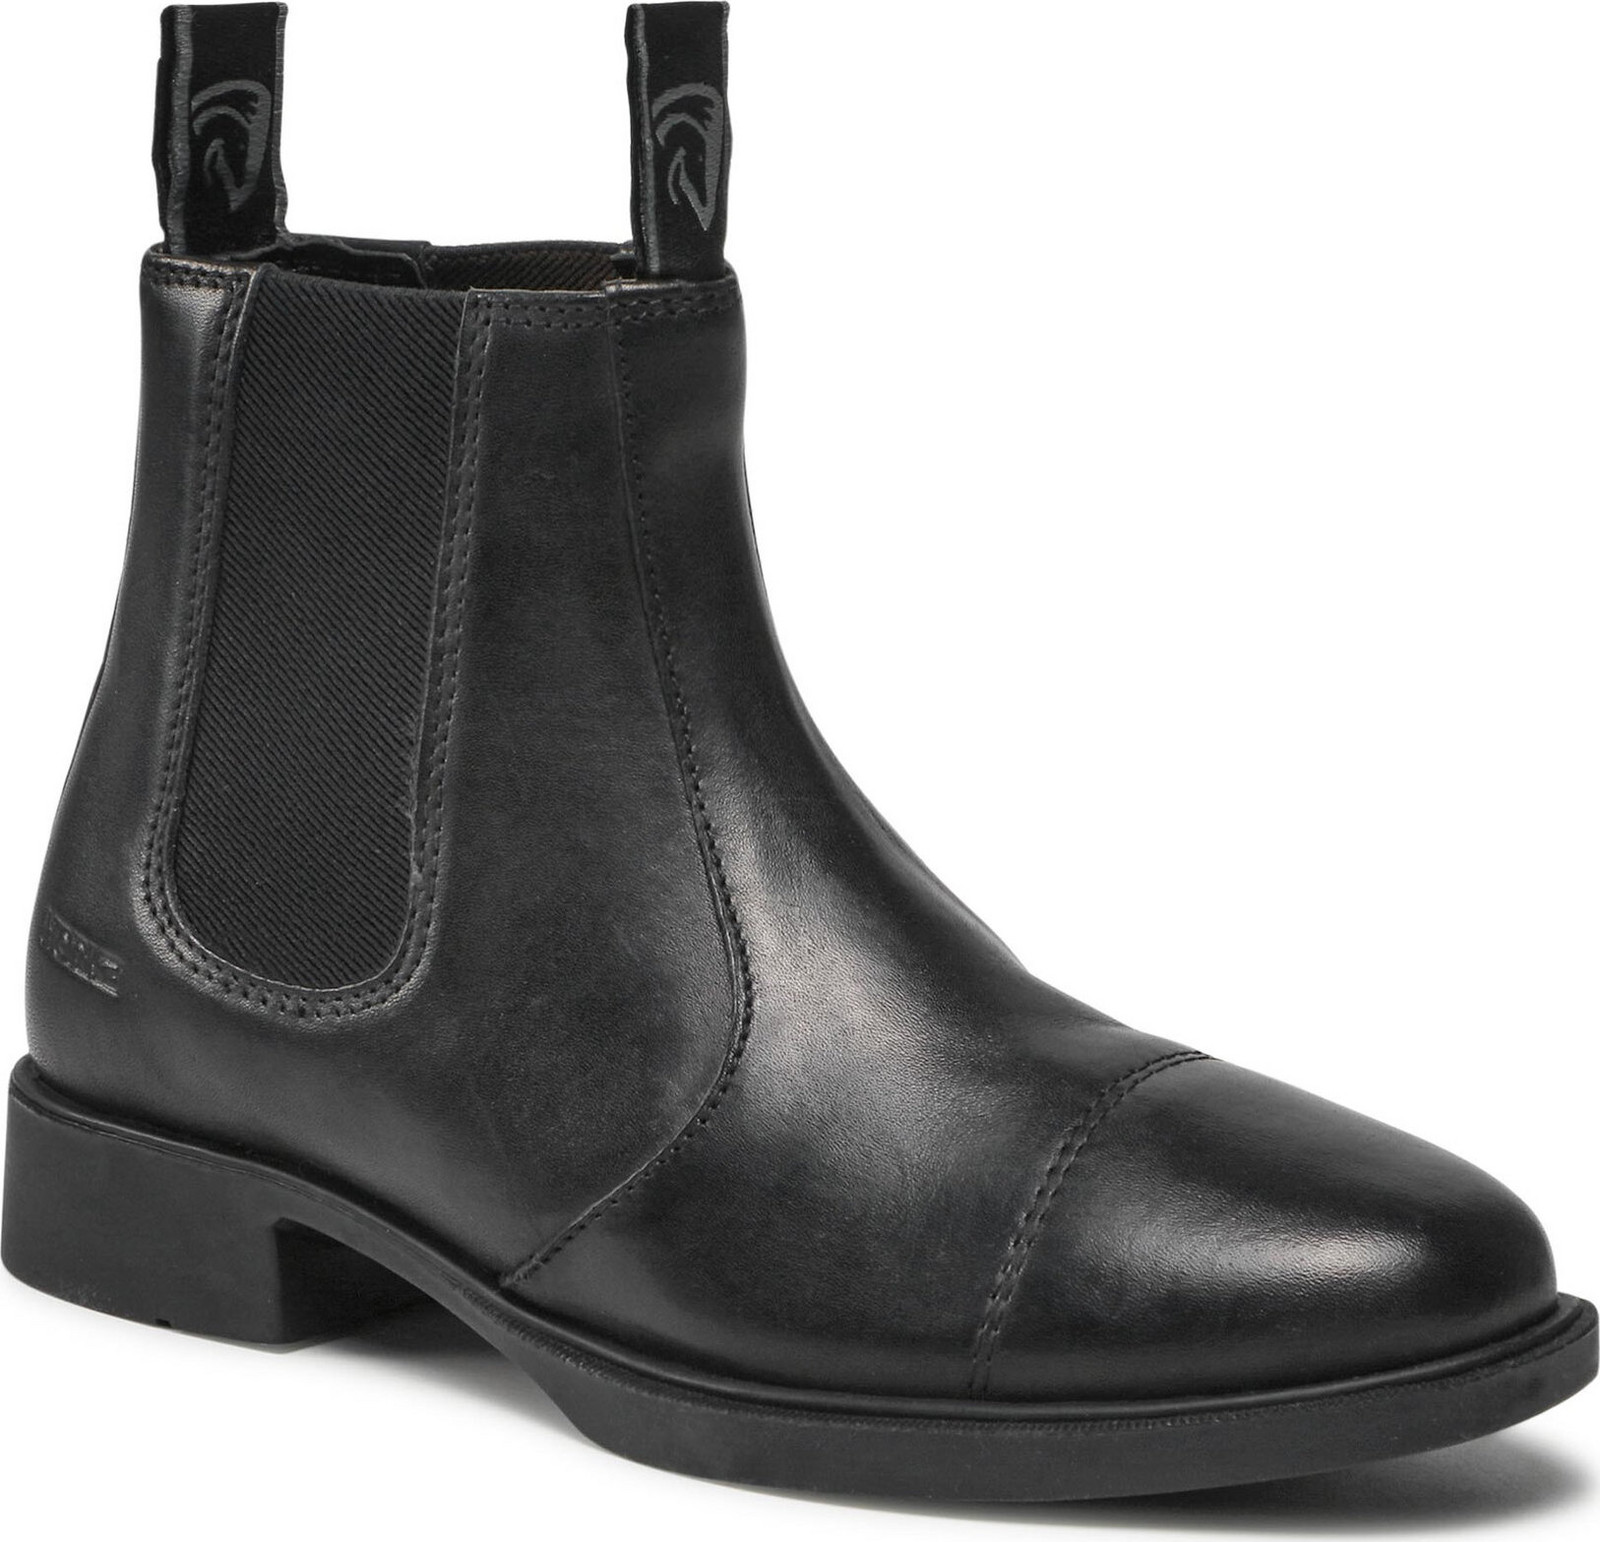 Kotníková obuv s elastickým prvkem Horka Basic 146100 Černá